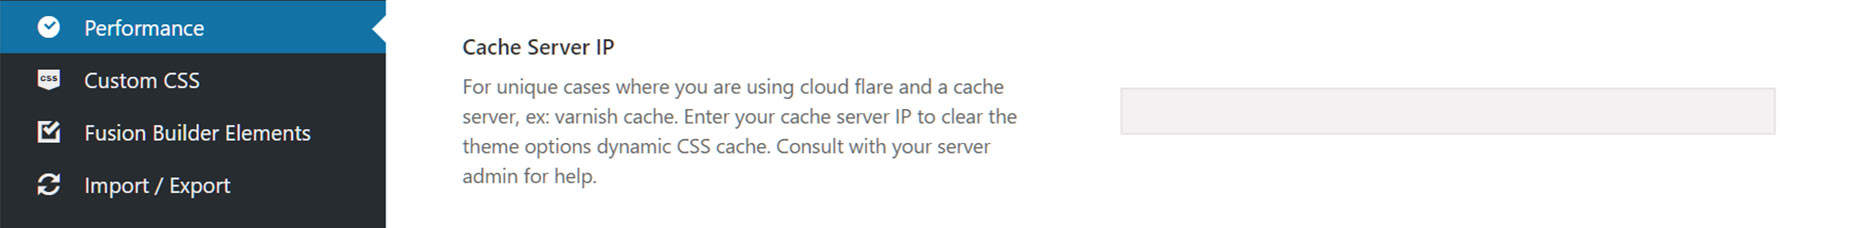 Cache Server IP